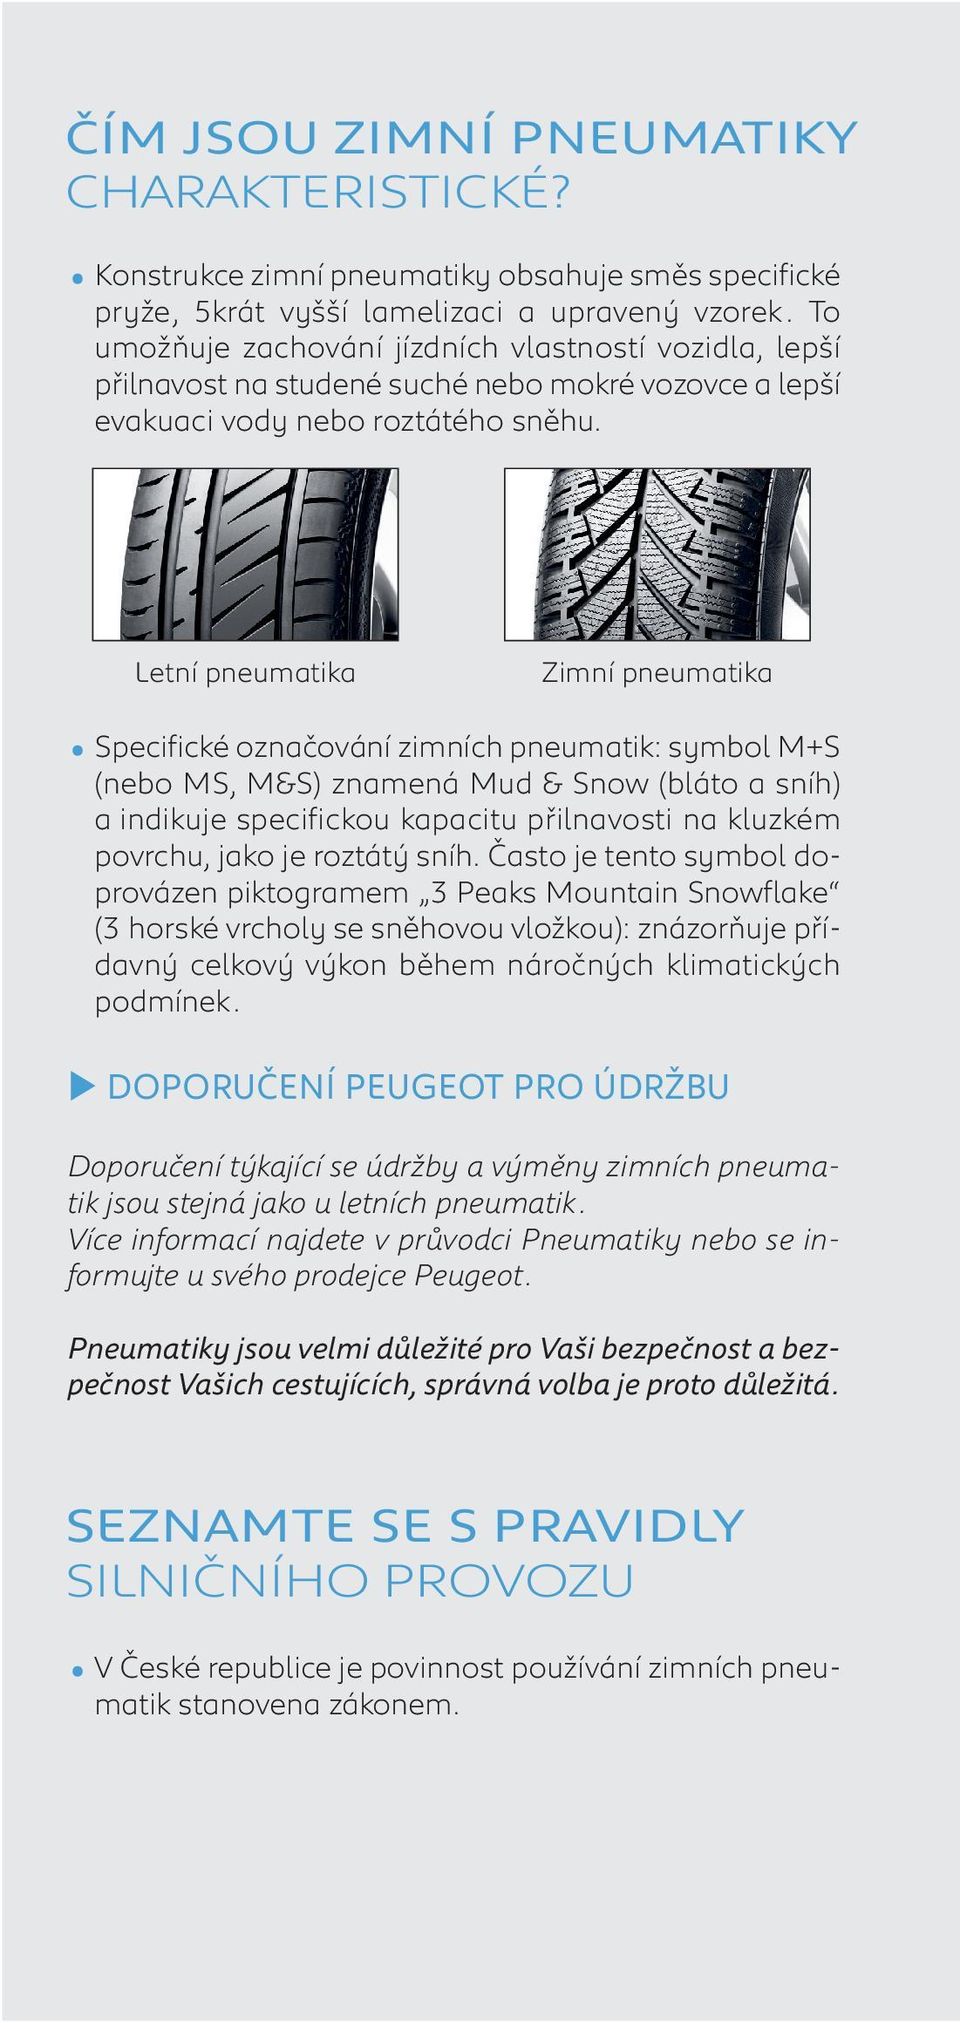 Letní pneumatika Zimní pneumatika Specifické označování zimních pneumatik: symbol M+S (nebo MS, M&S) znamená Mud & Snow (bláto a sníh) a indikuje specifickou kapacitu přilnavosti na kluzkém povrchu,